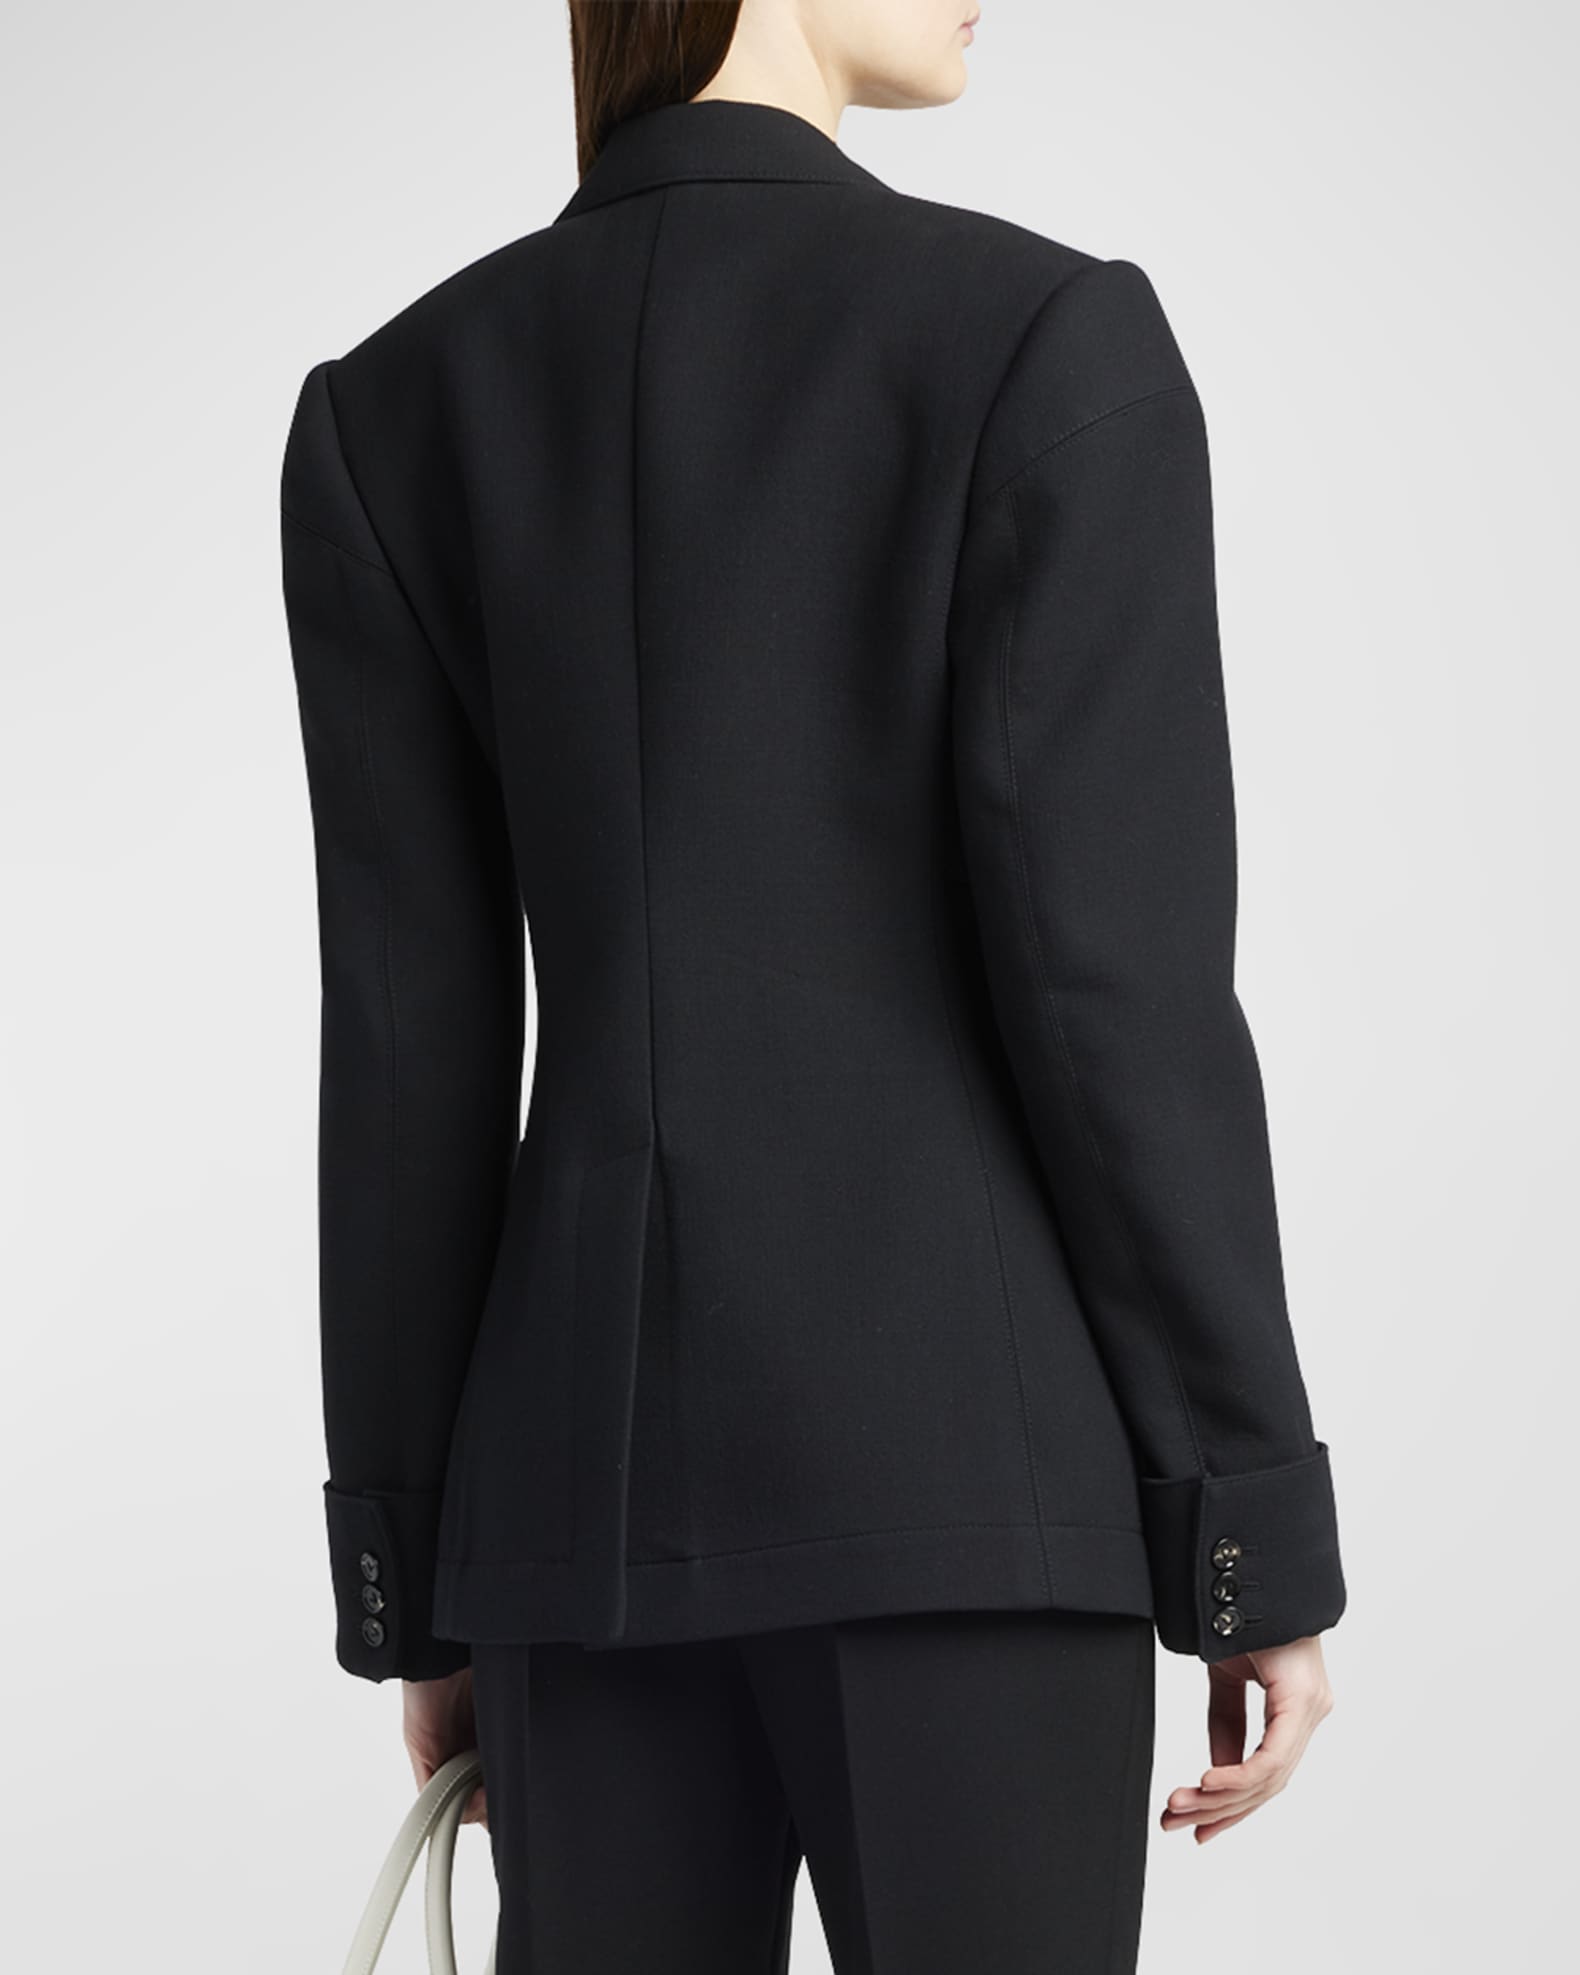 Bottega Veneta Classic Blazer Jacket | Neiman Marcus